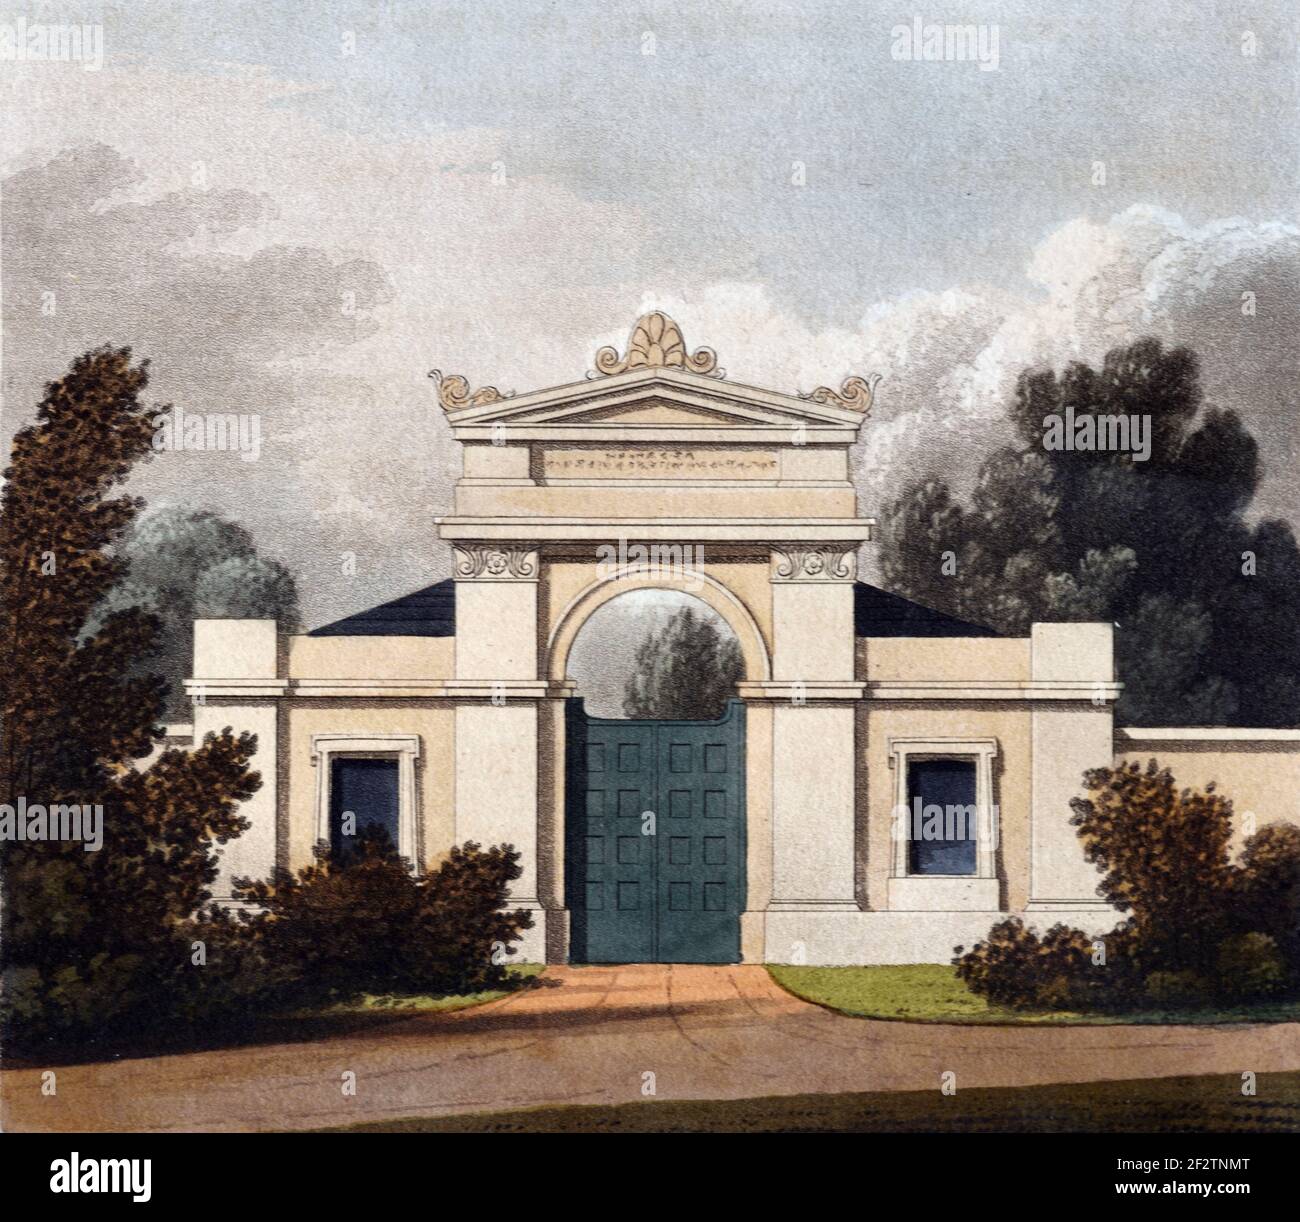 Ingresso monumentale classico o neoclassico, ingresso al cancello o al parco (1827) disegno architettonico d'epoca, acquatinto o incisione di James Thomson (1827) Foto Stock